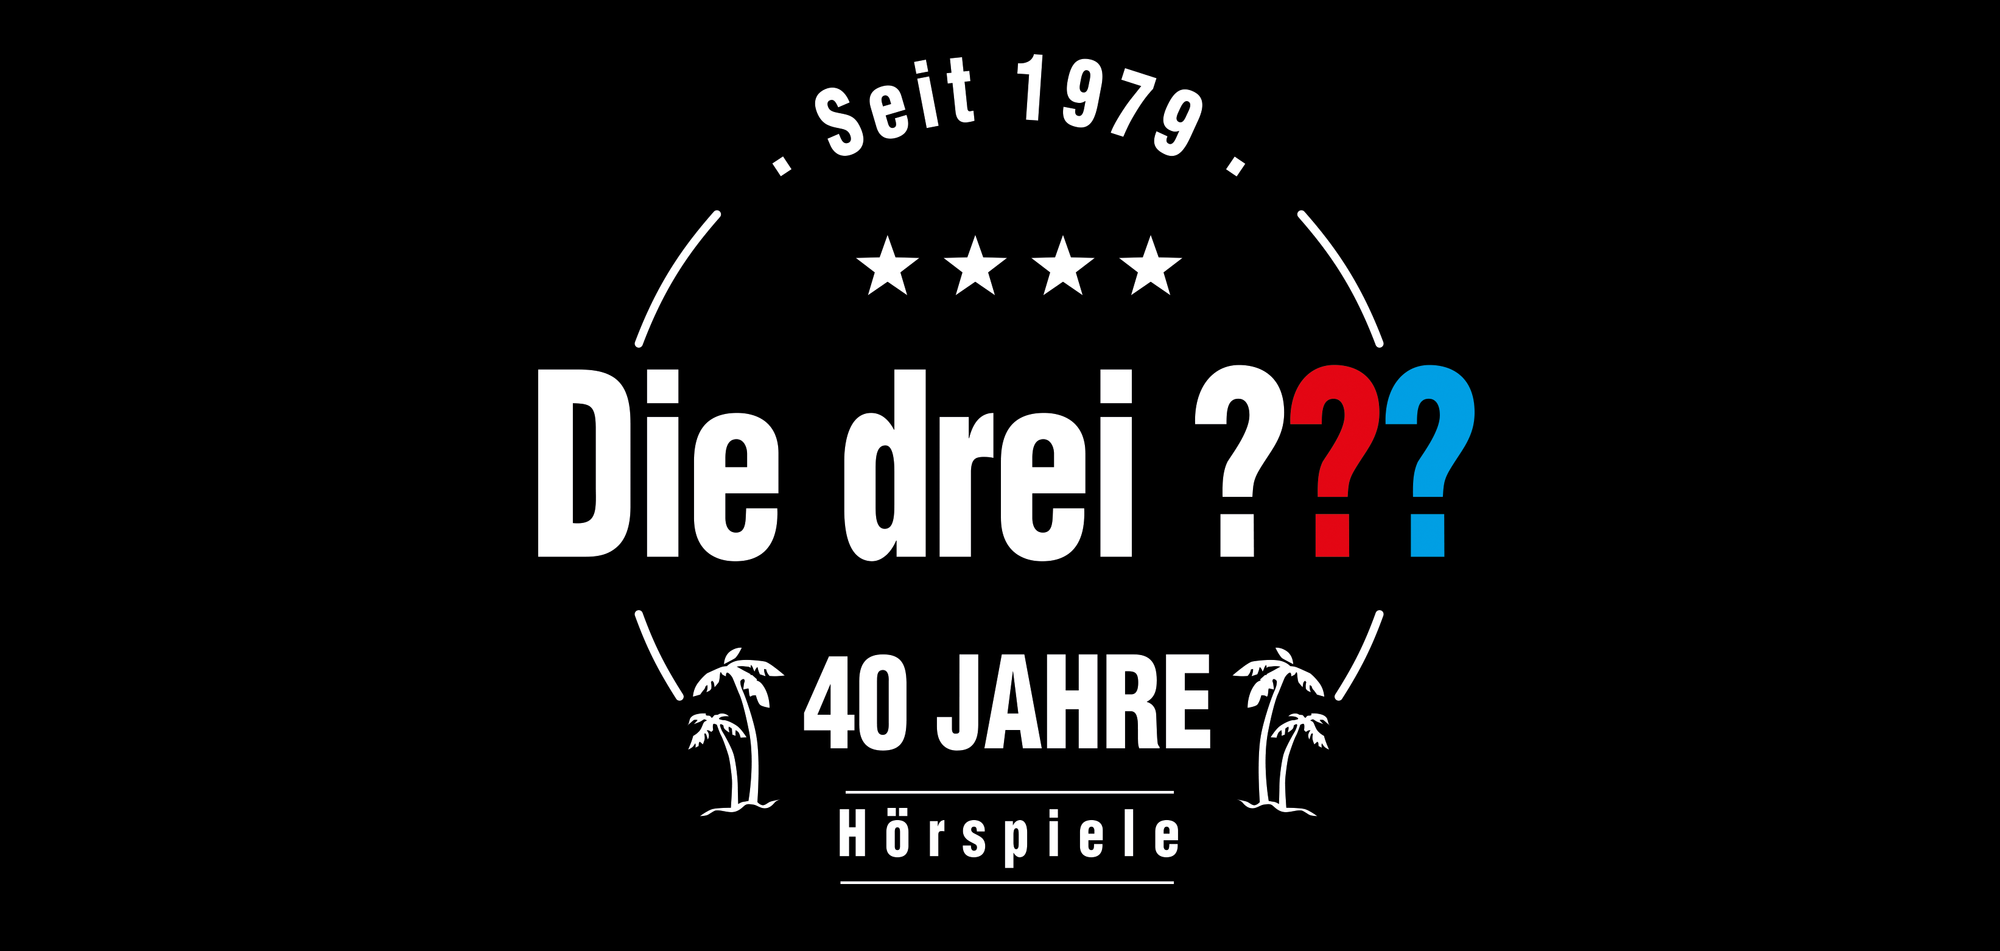 Die drei ??? Logo mit "Seit 1979" und "40 Jahre Hörspiele" in einem Kreis drum rum.